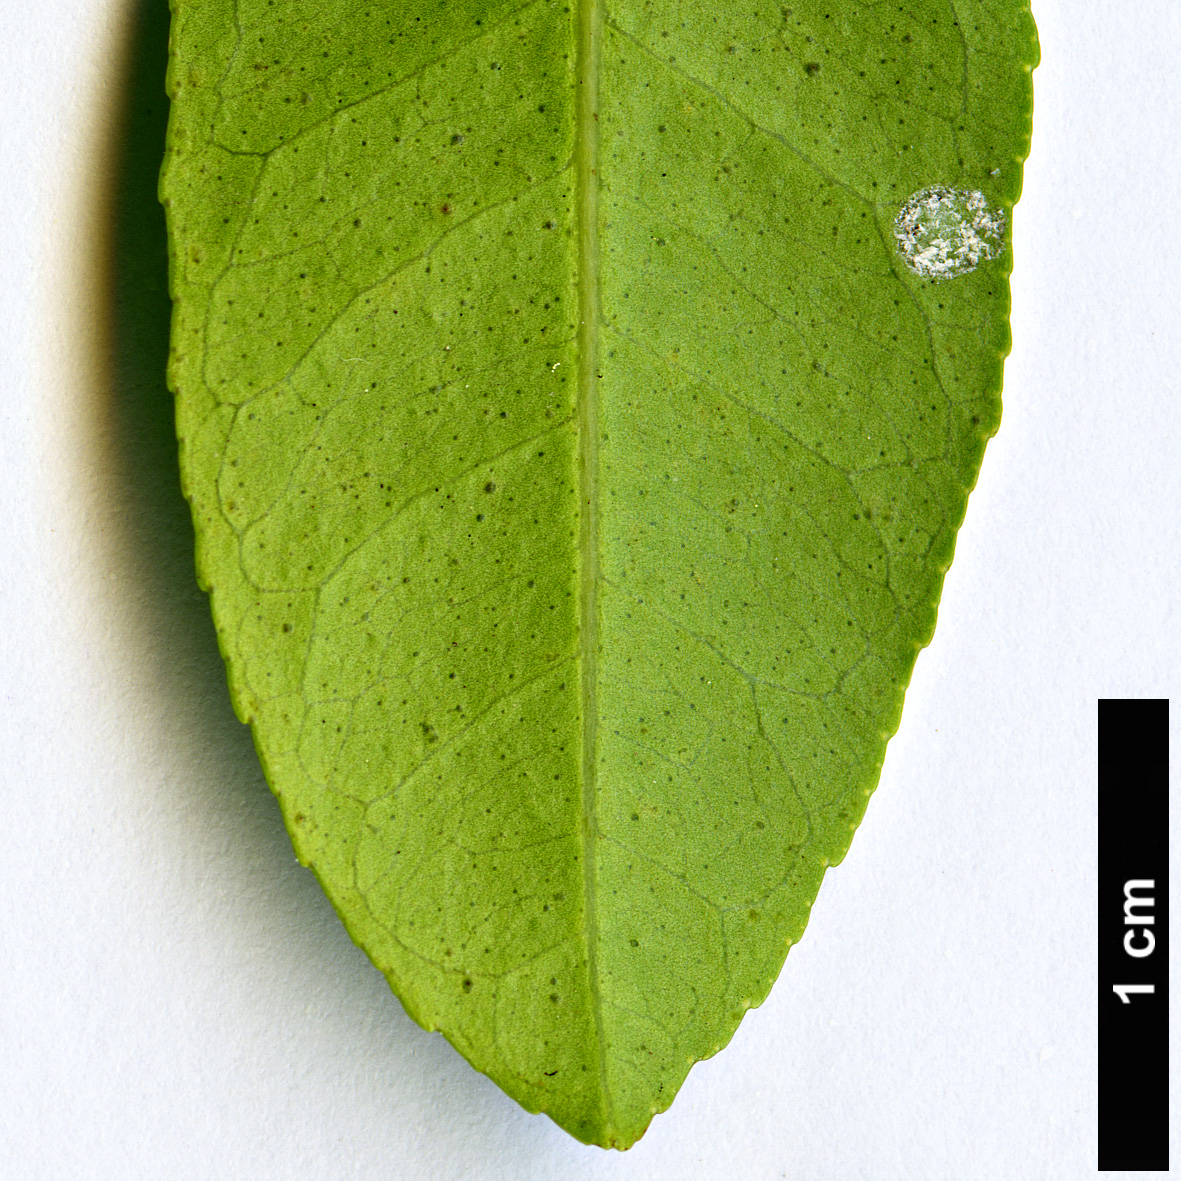 High resolution image: Family: Rutaceae - Genus: Citrus - Taxon: australasica